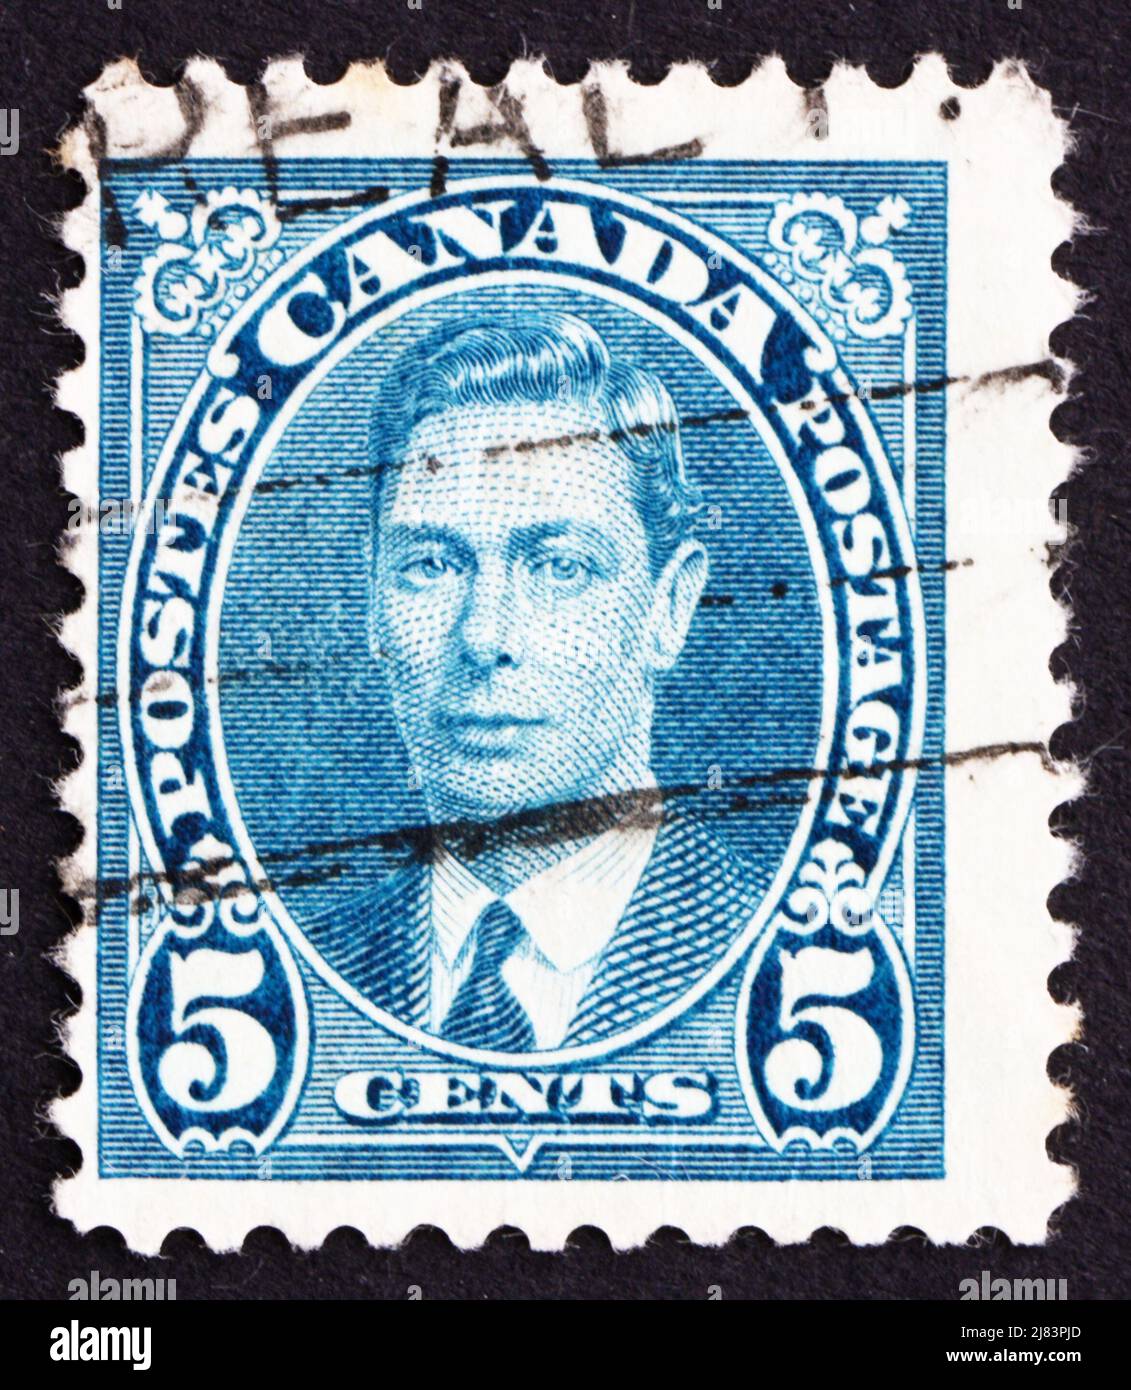 KANADA - UM 1937 eine in Kanada gedruckte Briefmarke zeigt König George VI., König von England, um 1937 Stockfoto